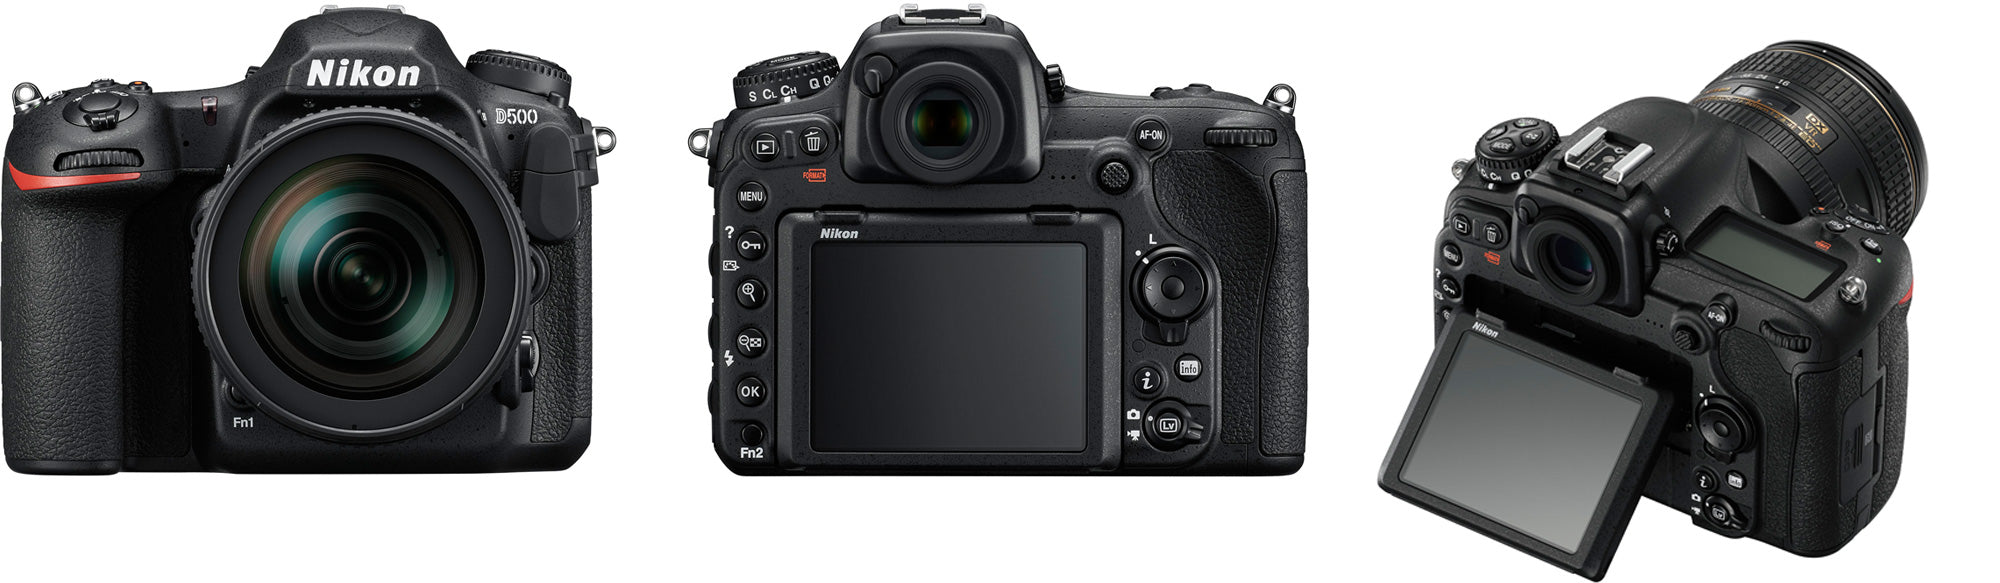 Nikon D500 Wi-Fi 4K Digital SLR Camera &amp; 16-80mm VR Lens + 64GB Card + Backpack + Battery &amp; Charger + Filters + More